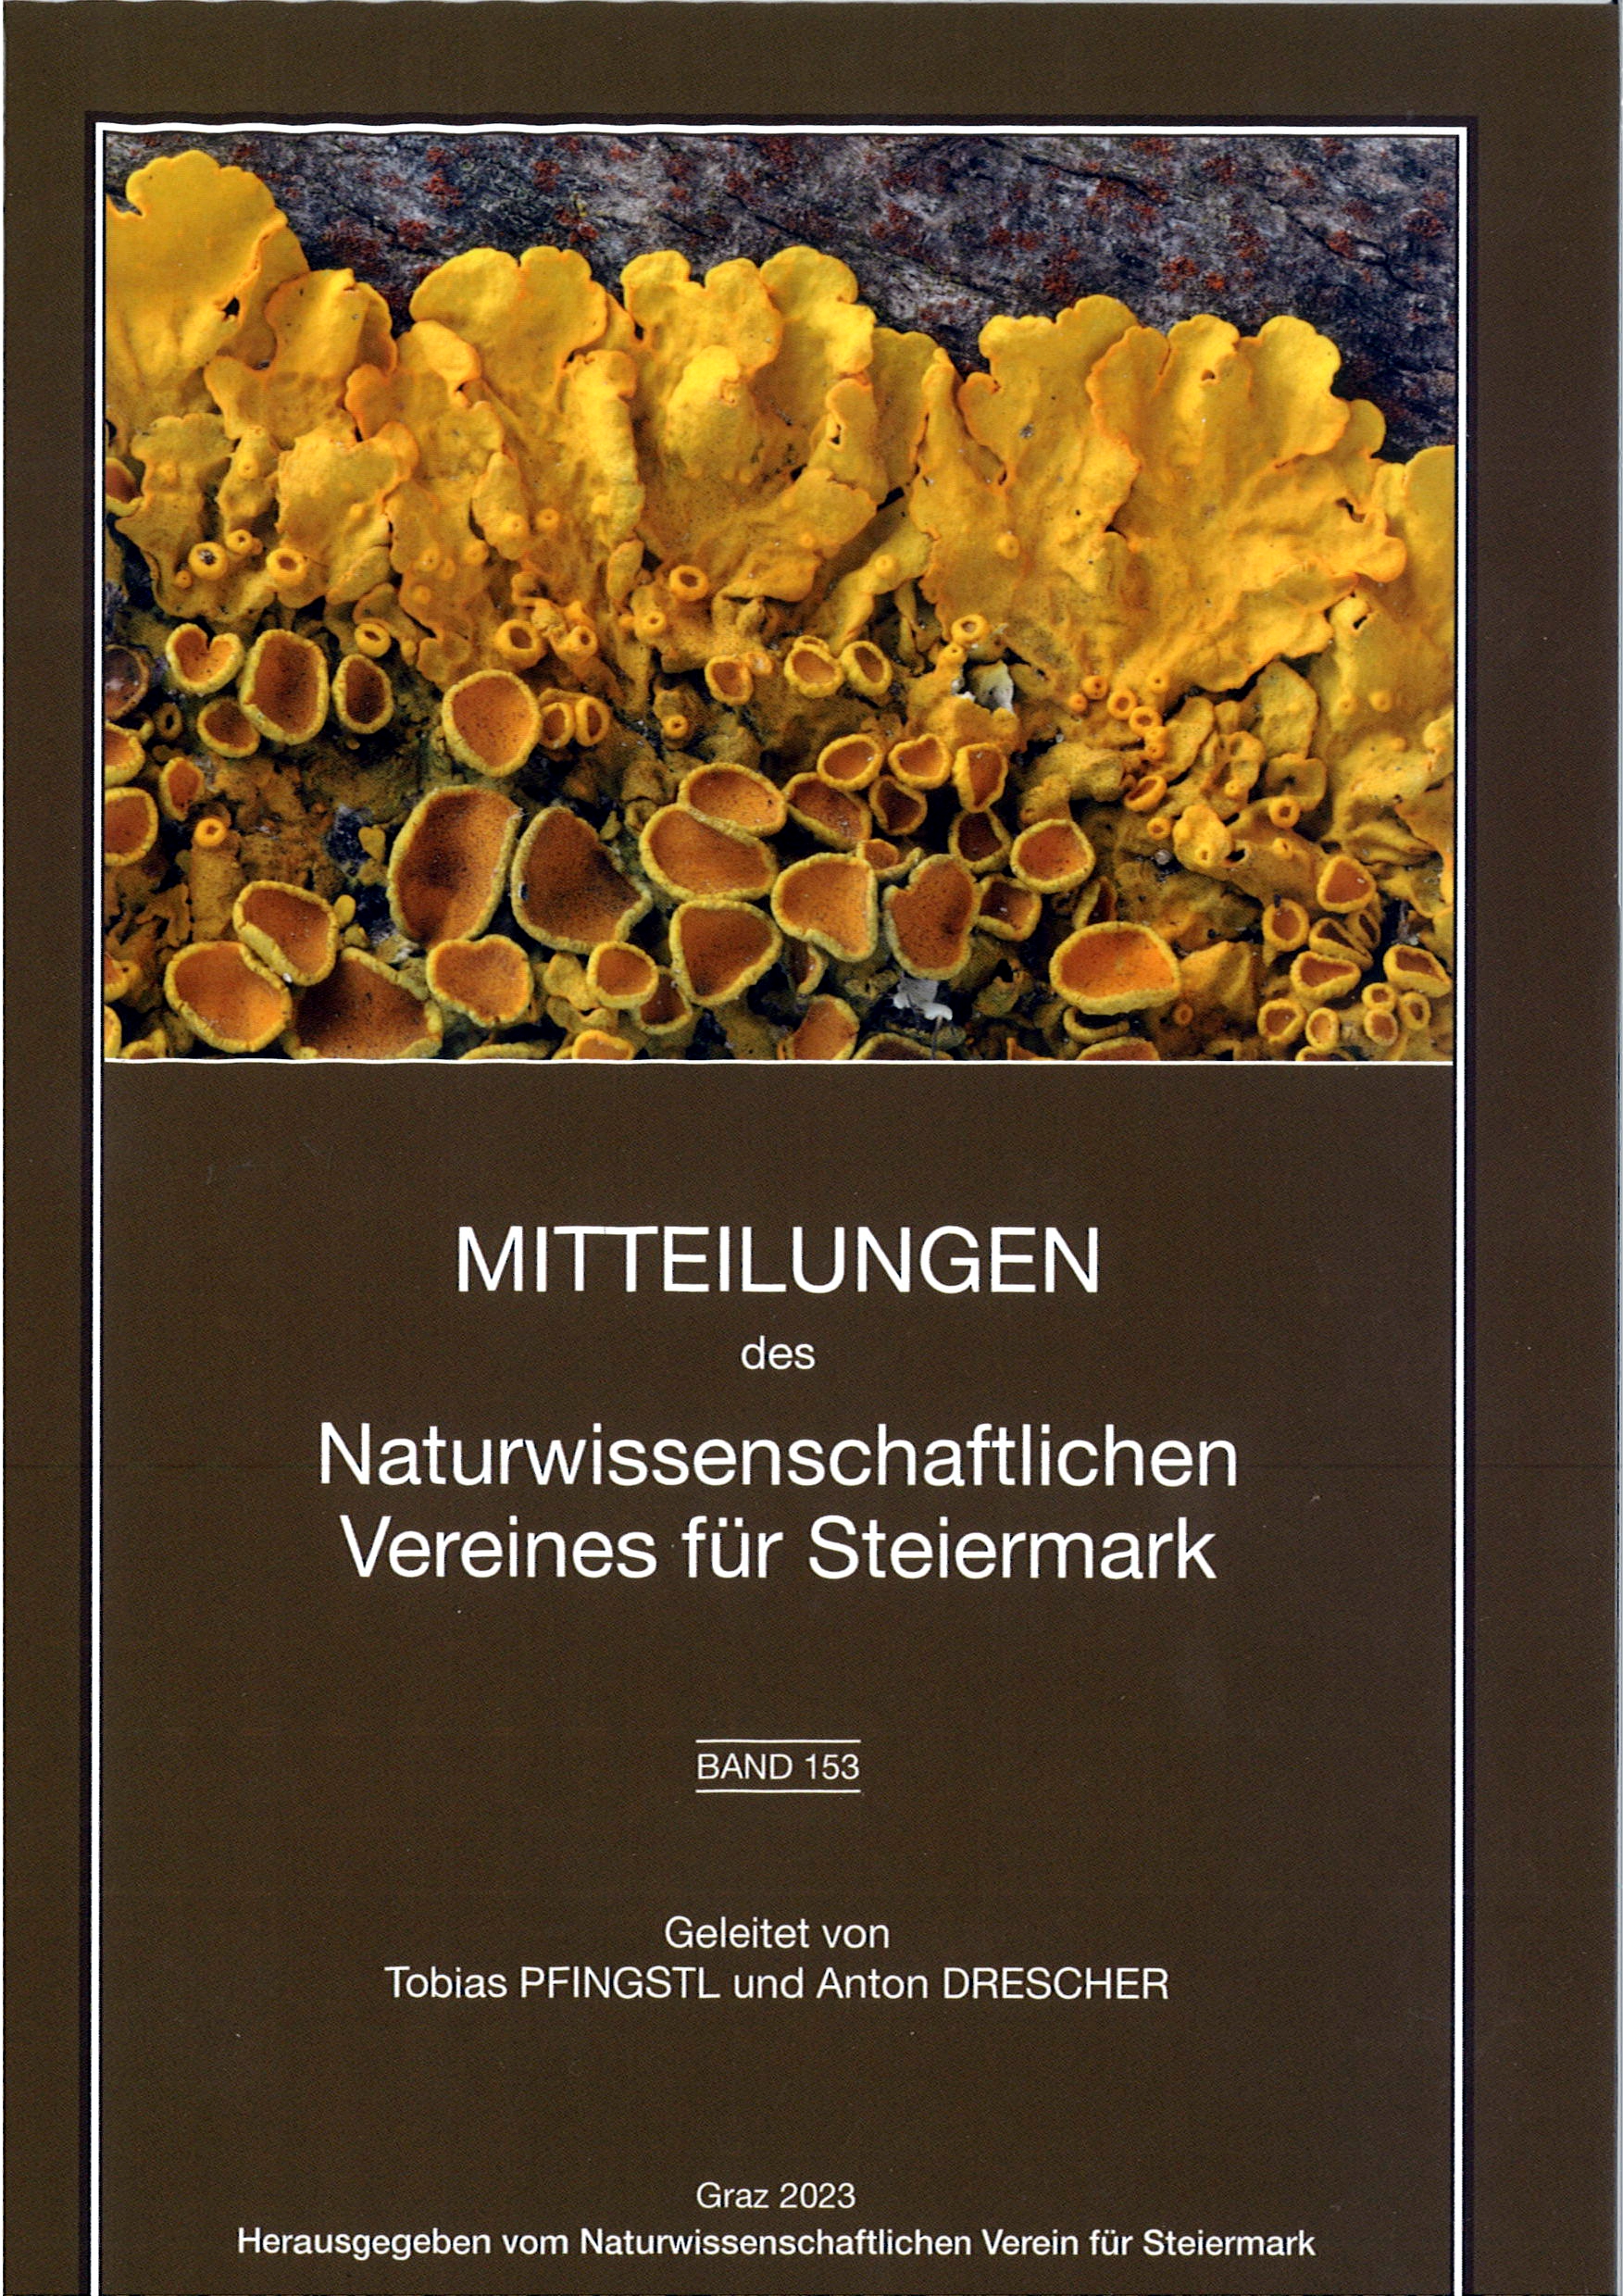 Titelseite 153 ©Naturwissenschaftlicher Verein für Steiermark